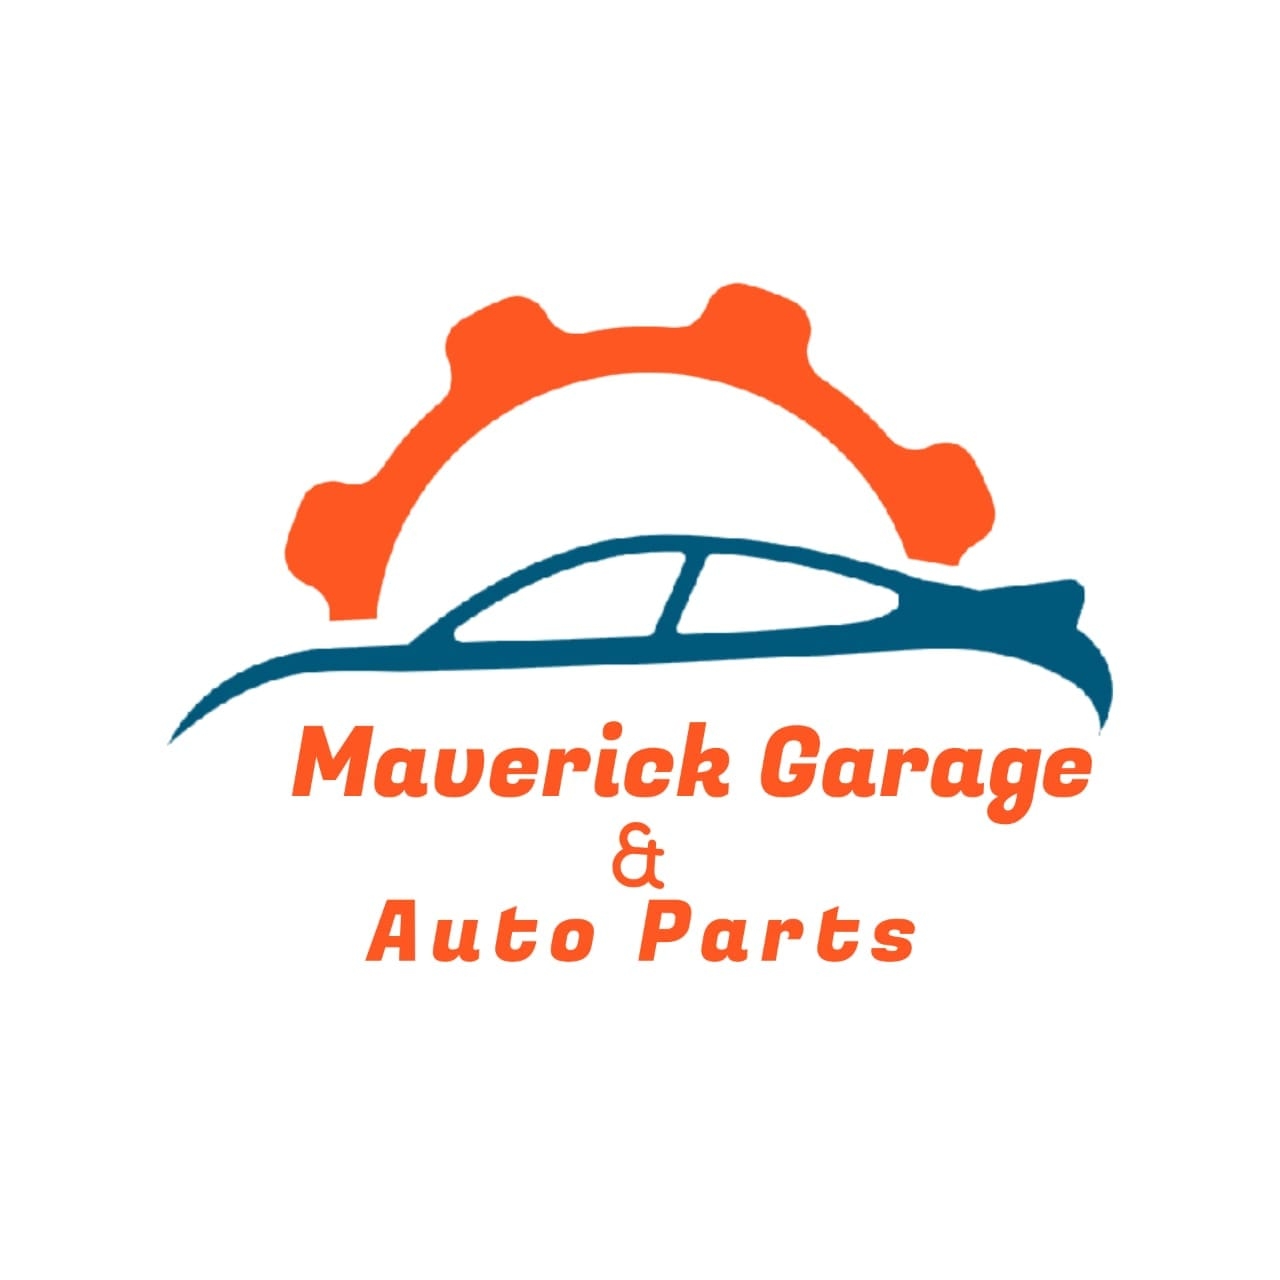 Maverick Garage - Belize, Central America